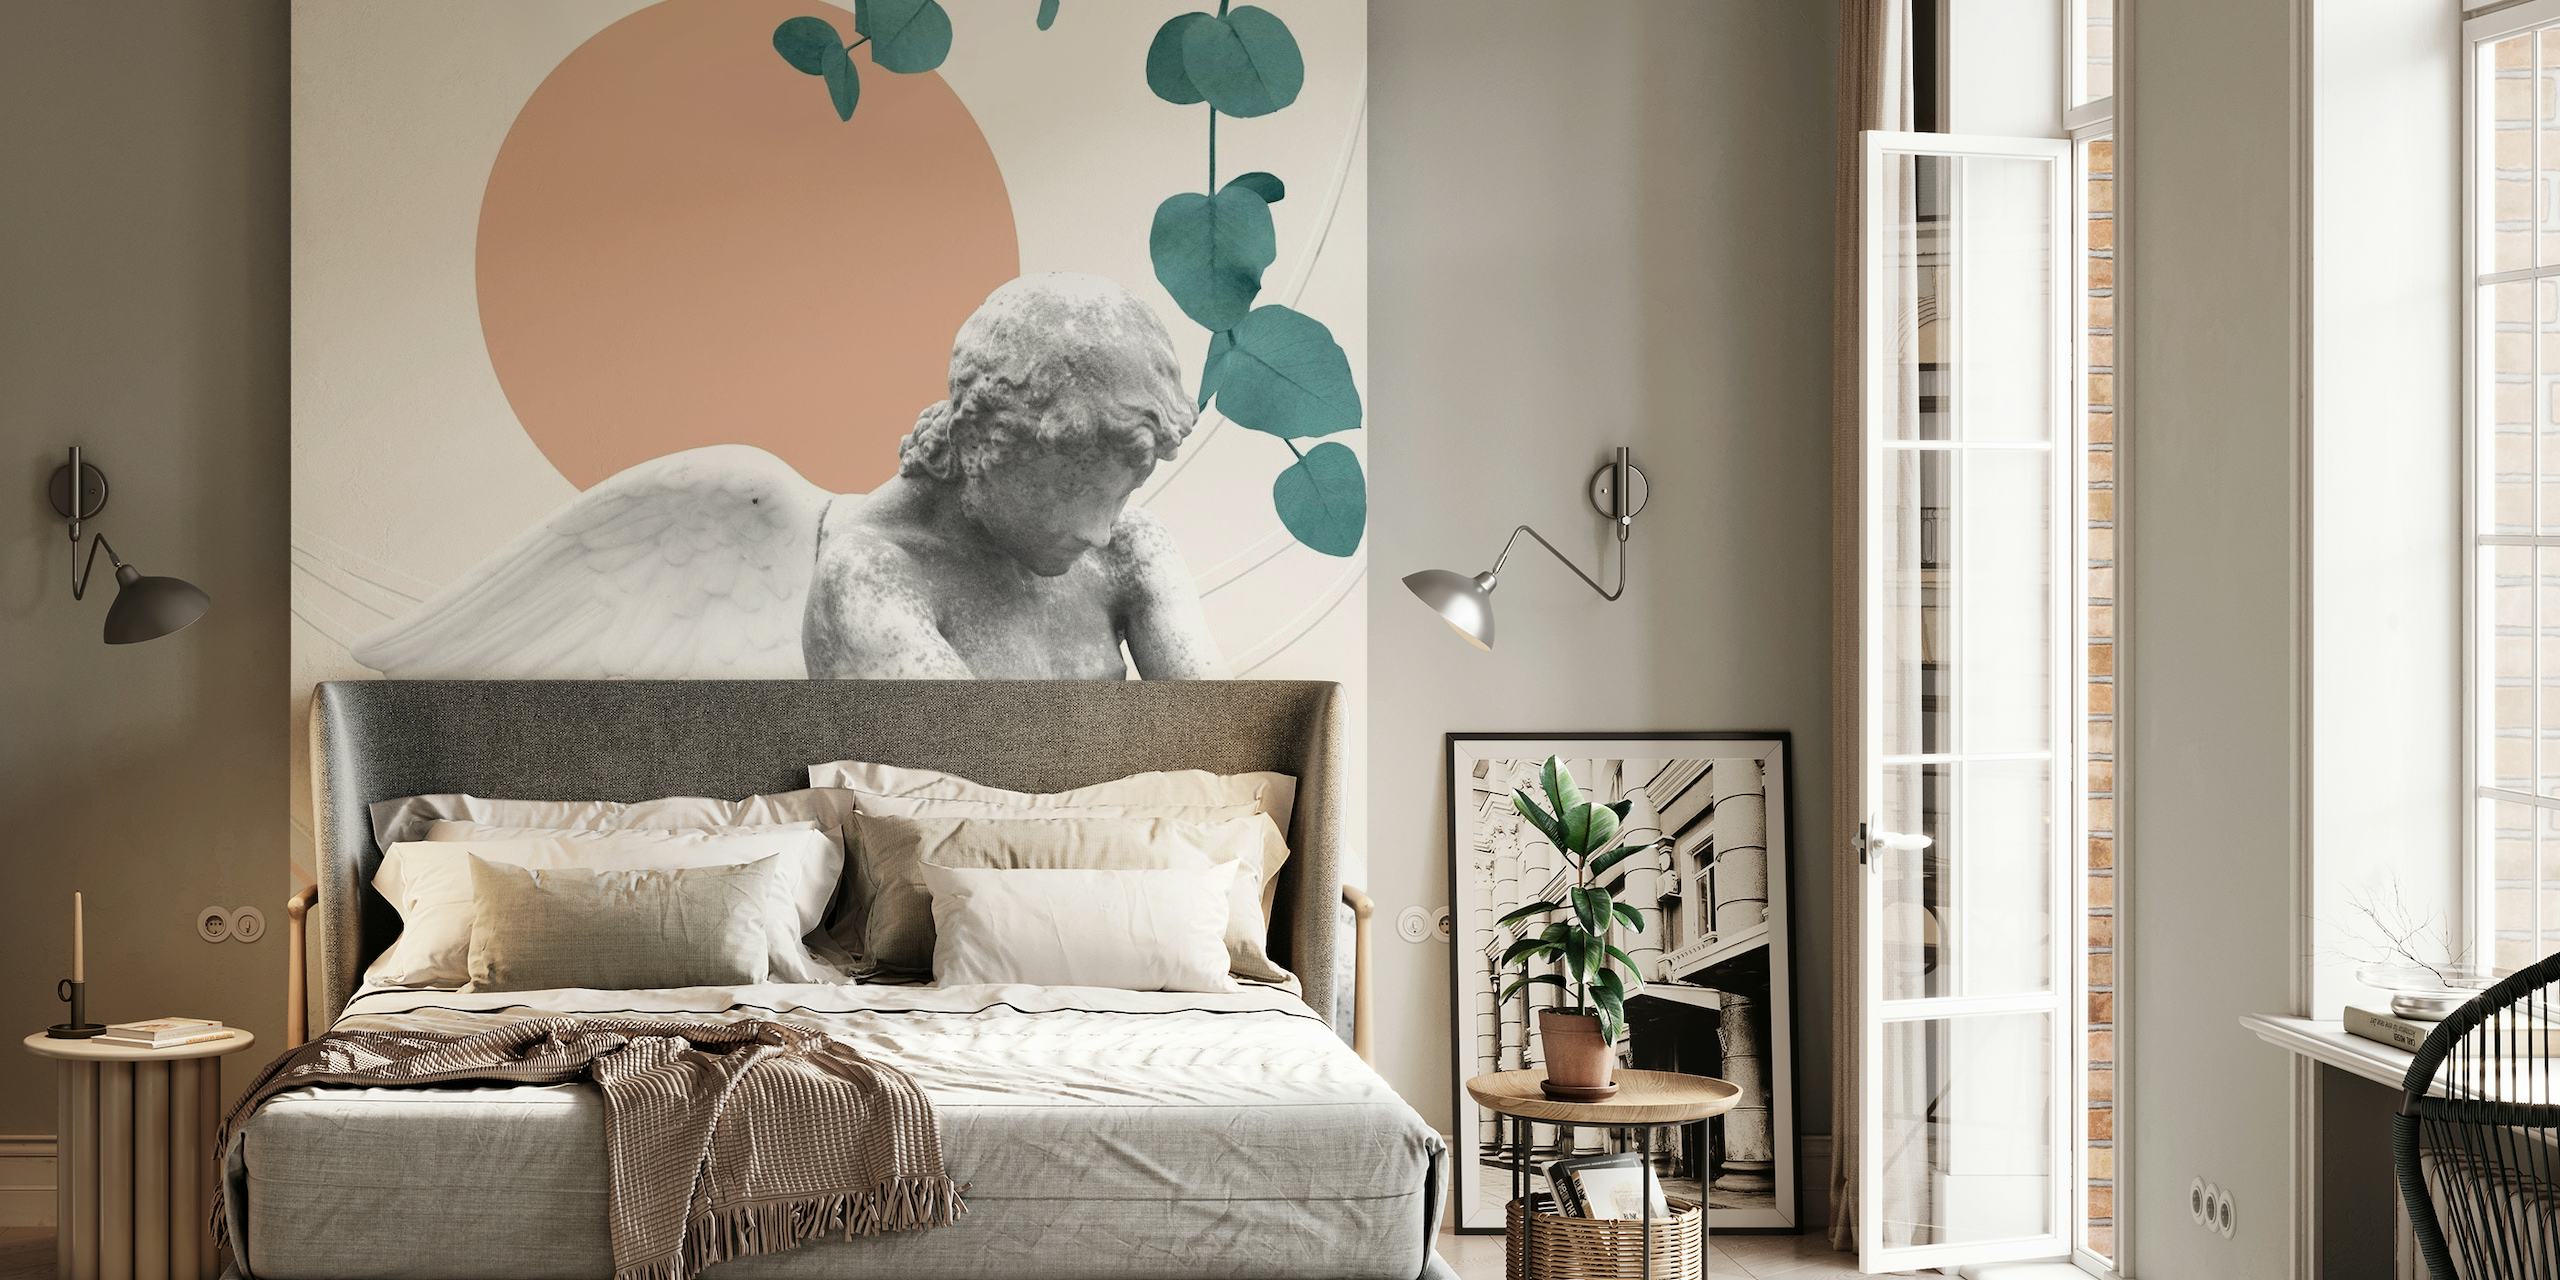 Eros Abstract Finesse Wandgemälde mit Cherub, Marmortexturen, geometrischen Formen und botanischen Elementen.